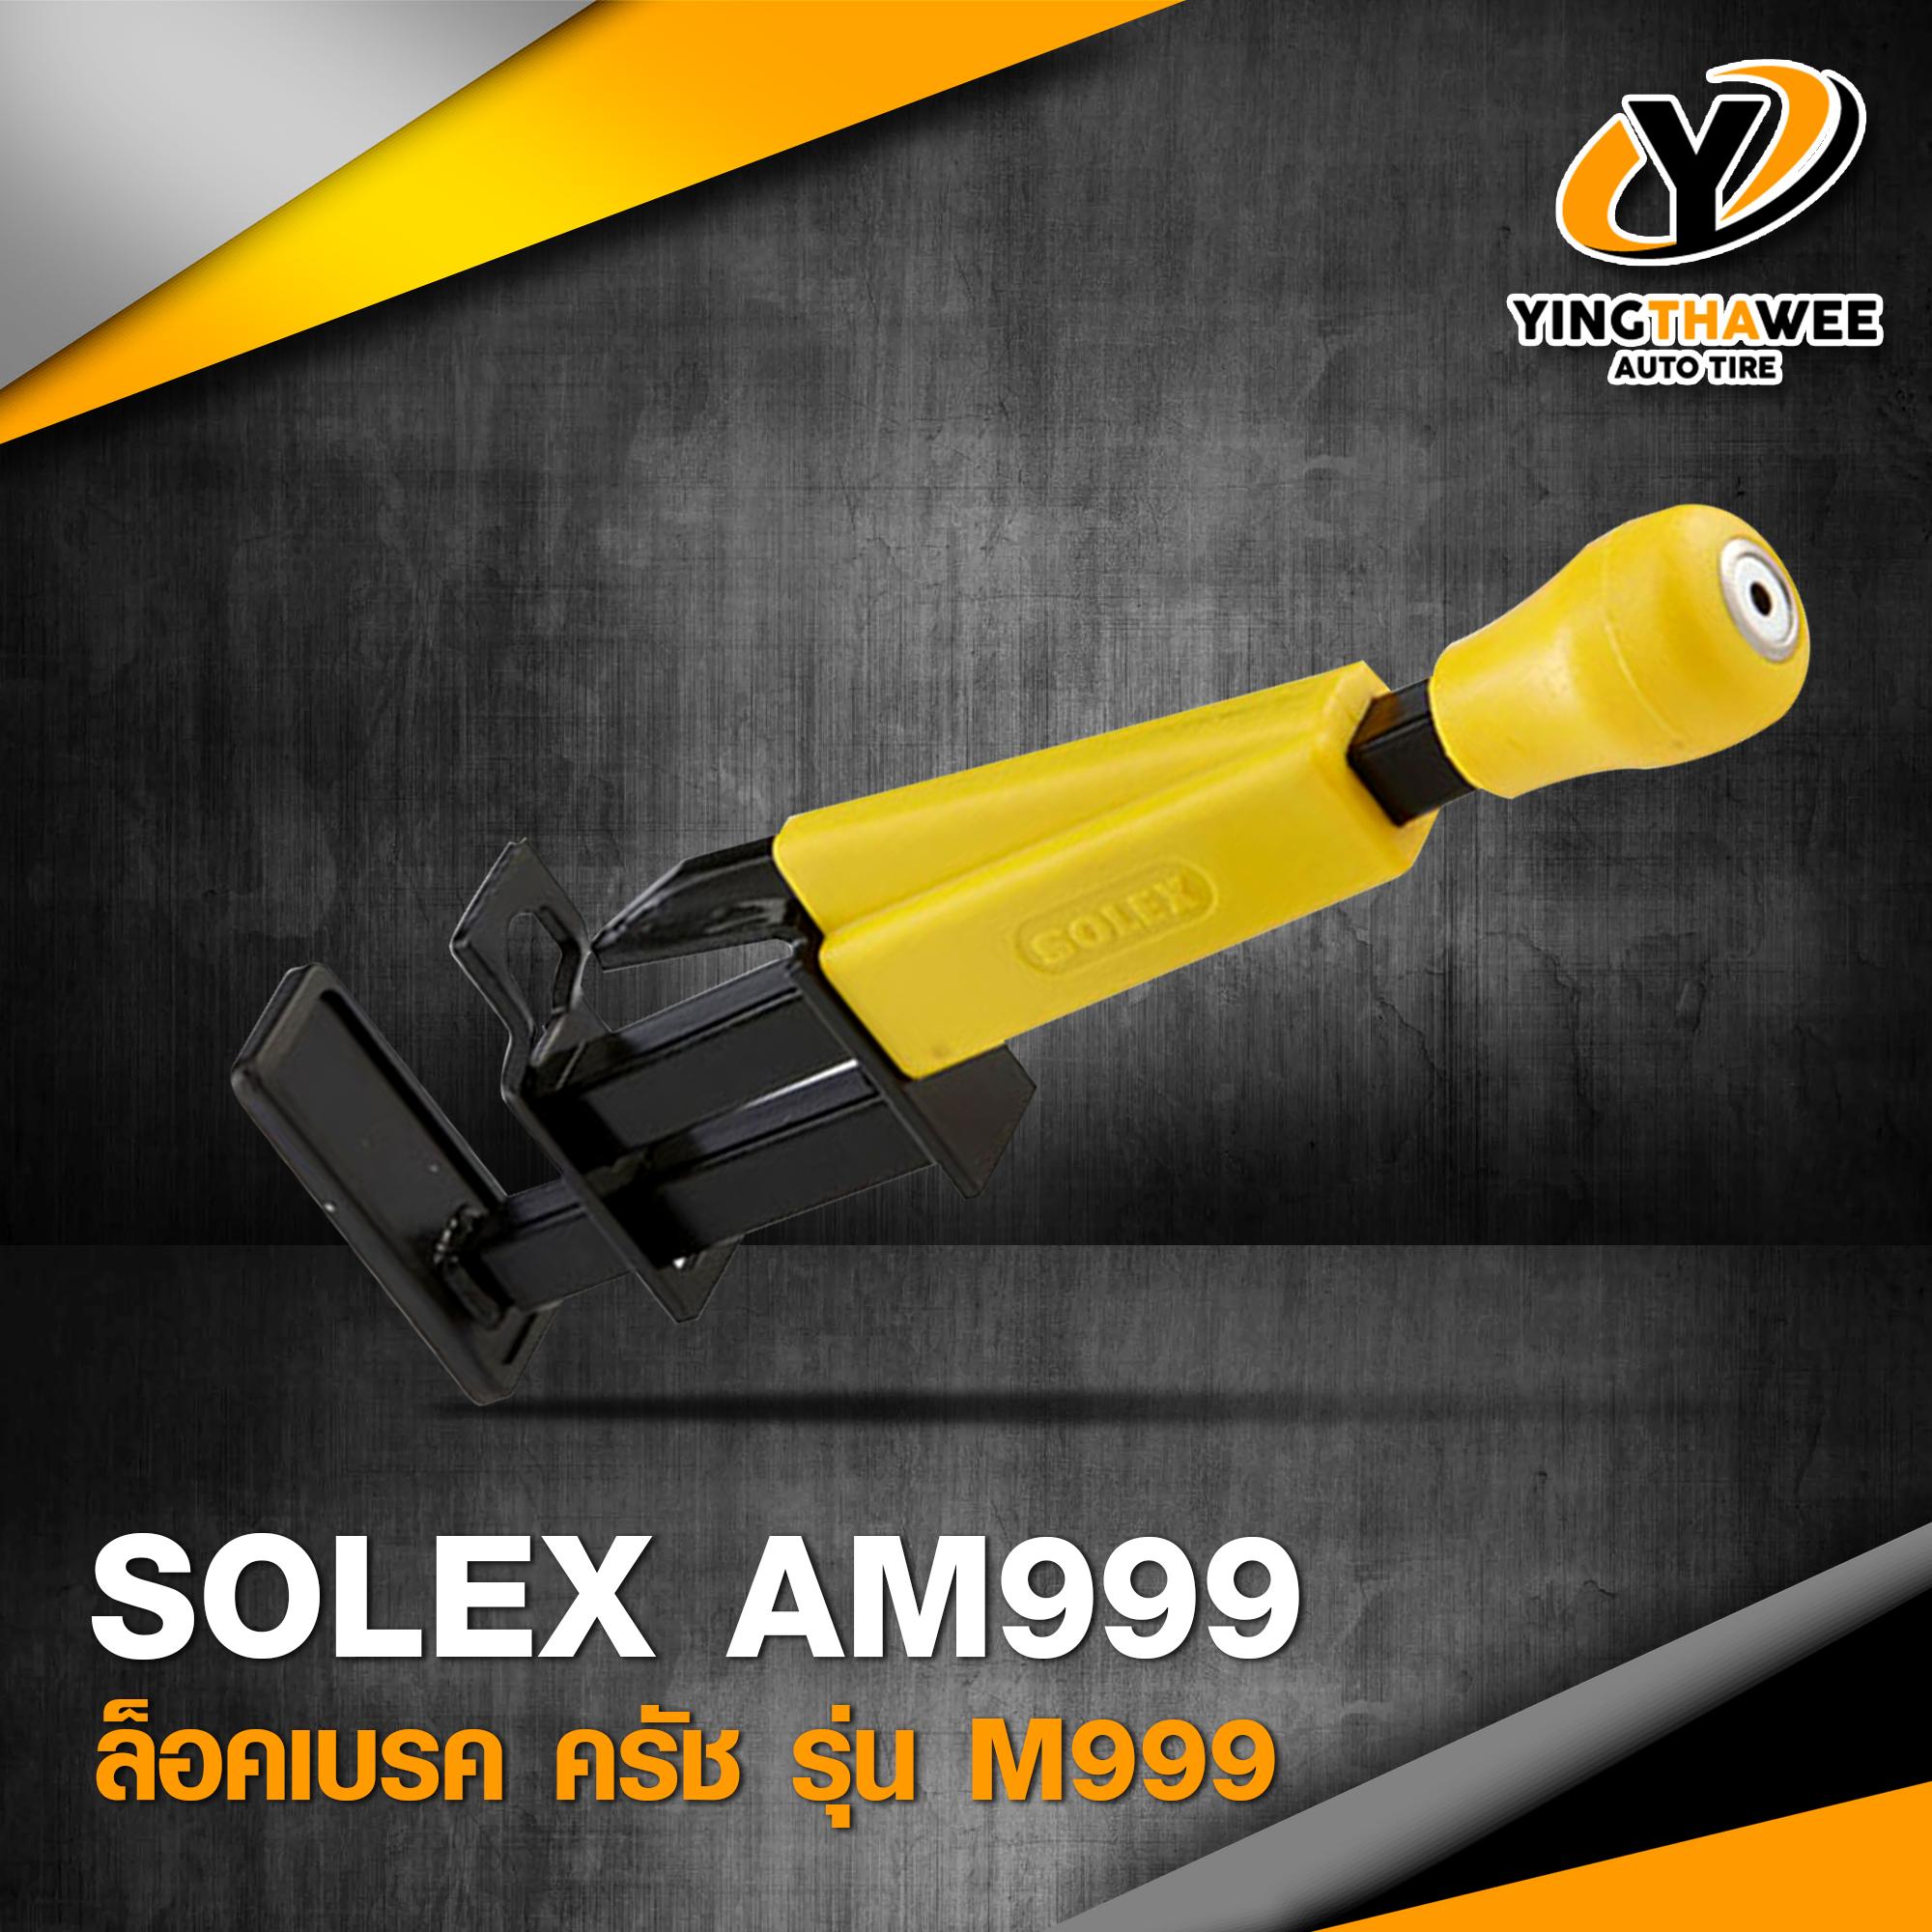 SOLEX ล็อคเบรค ครัช รุ่น AM999 แข็งแรง ทนทาน มาตรฐานสูง *อุปกรณ์ป้องกันการโจรกรรม